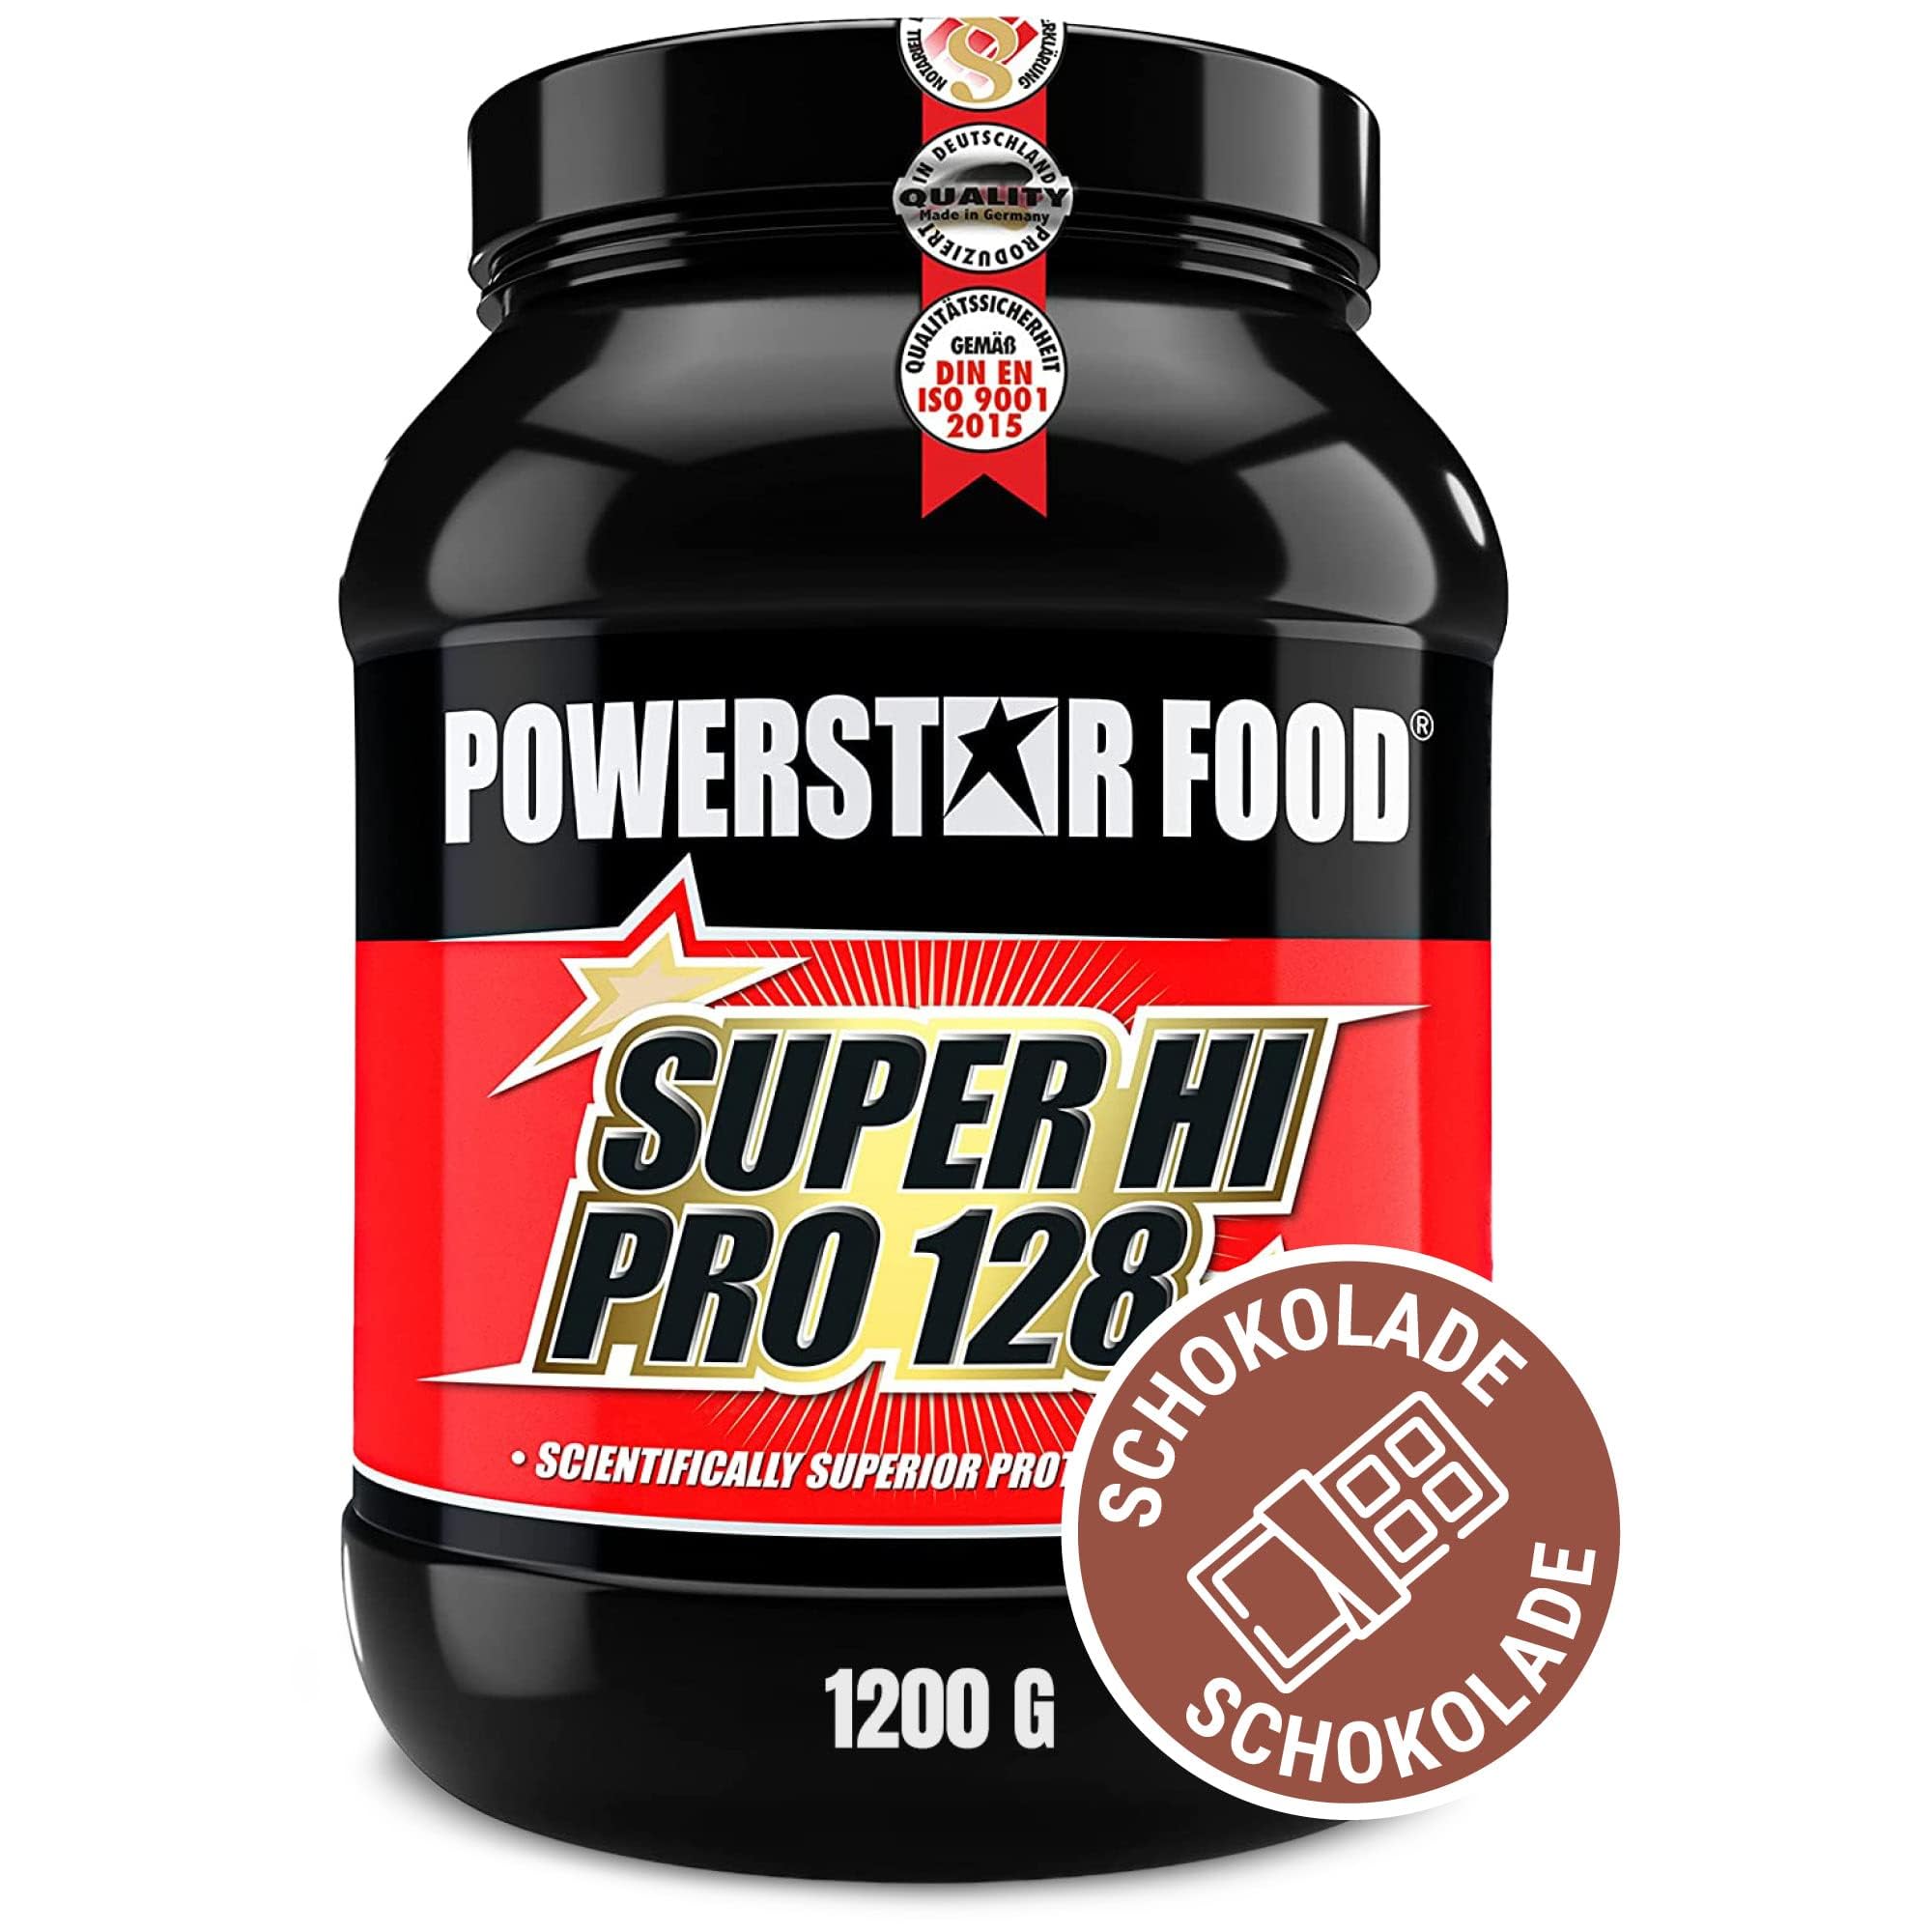 Powerstar SUPER HI PRO 128 | Mehrkomponenten Protein-Pulver Chocolate 1200 g | Höchstmögliche Biologische Wertigkeit | Eiweiß-Pulver mit 78% Protein i.Tr. | Protein-Shake zum Muskelaufbau